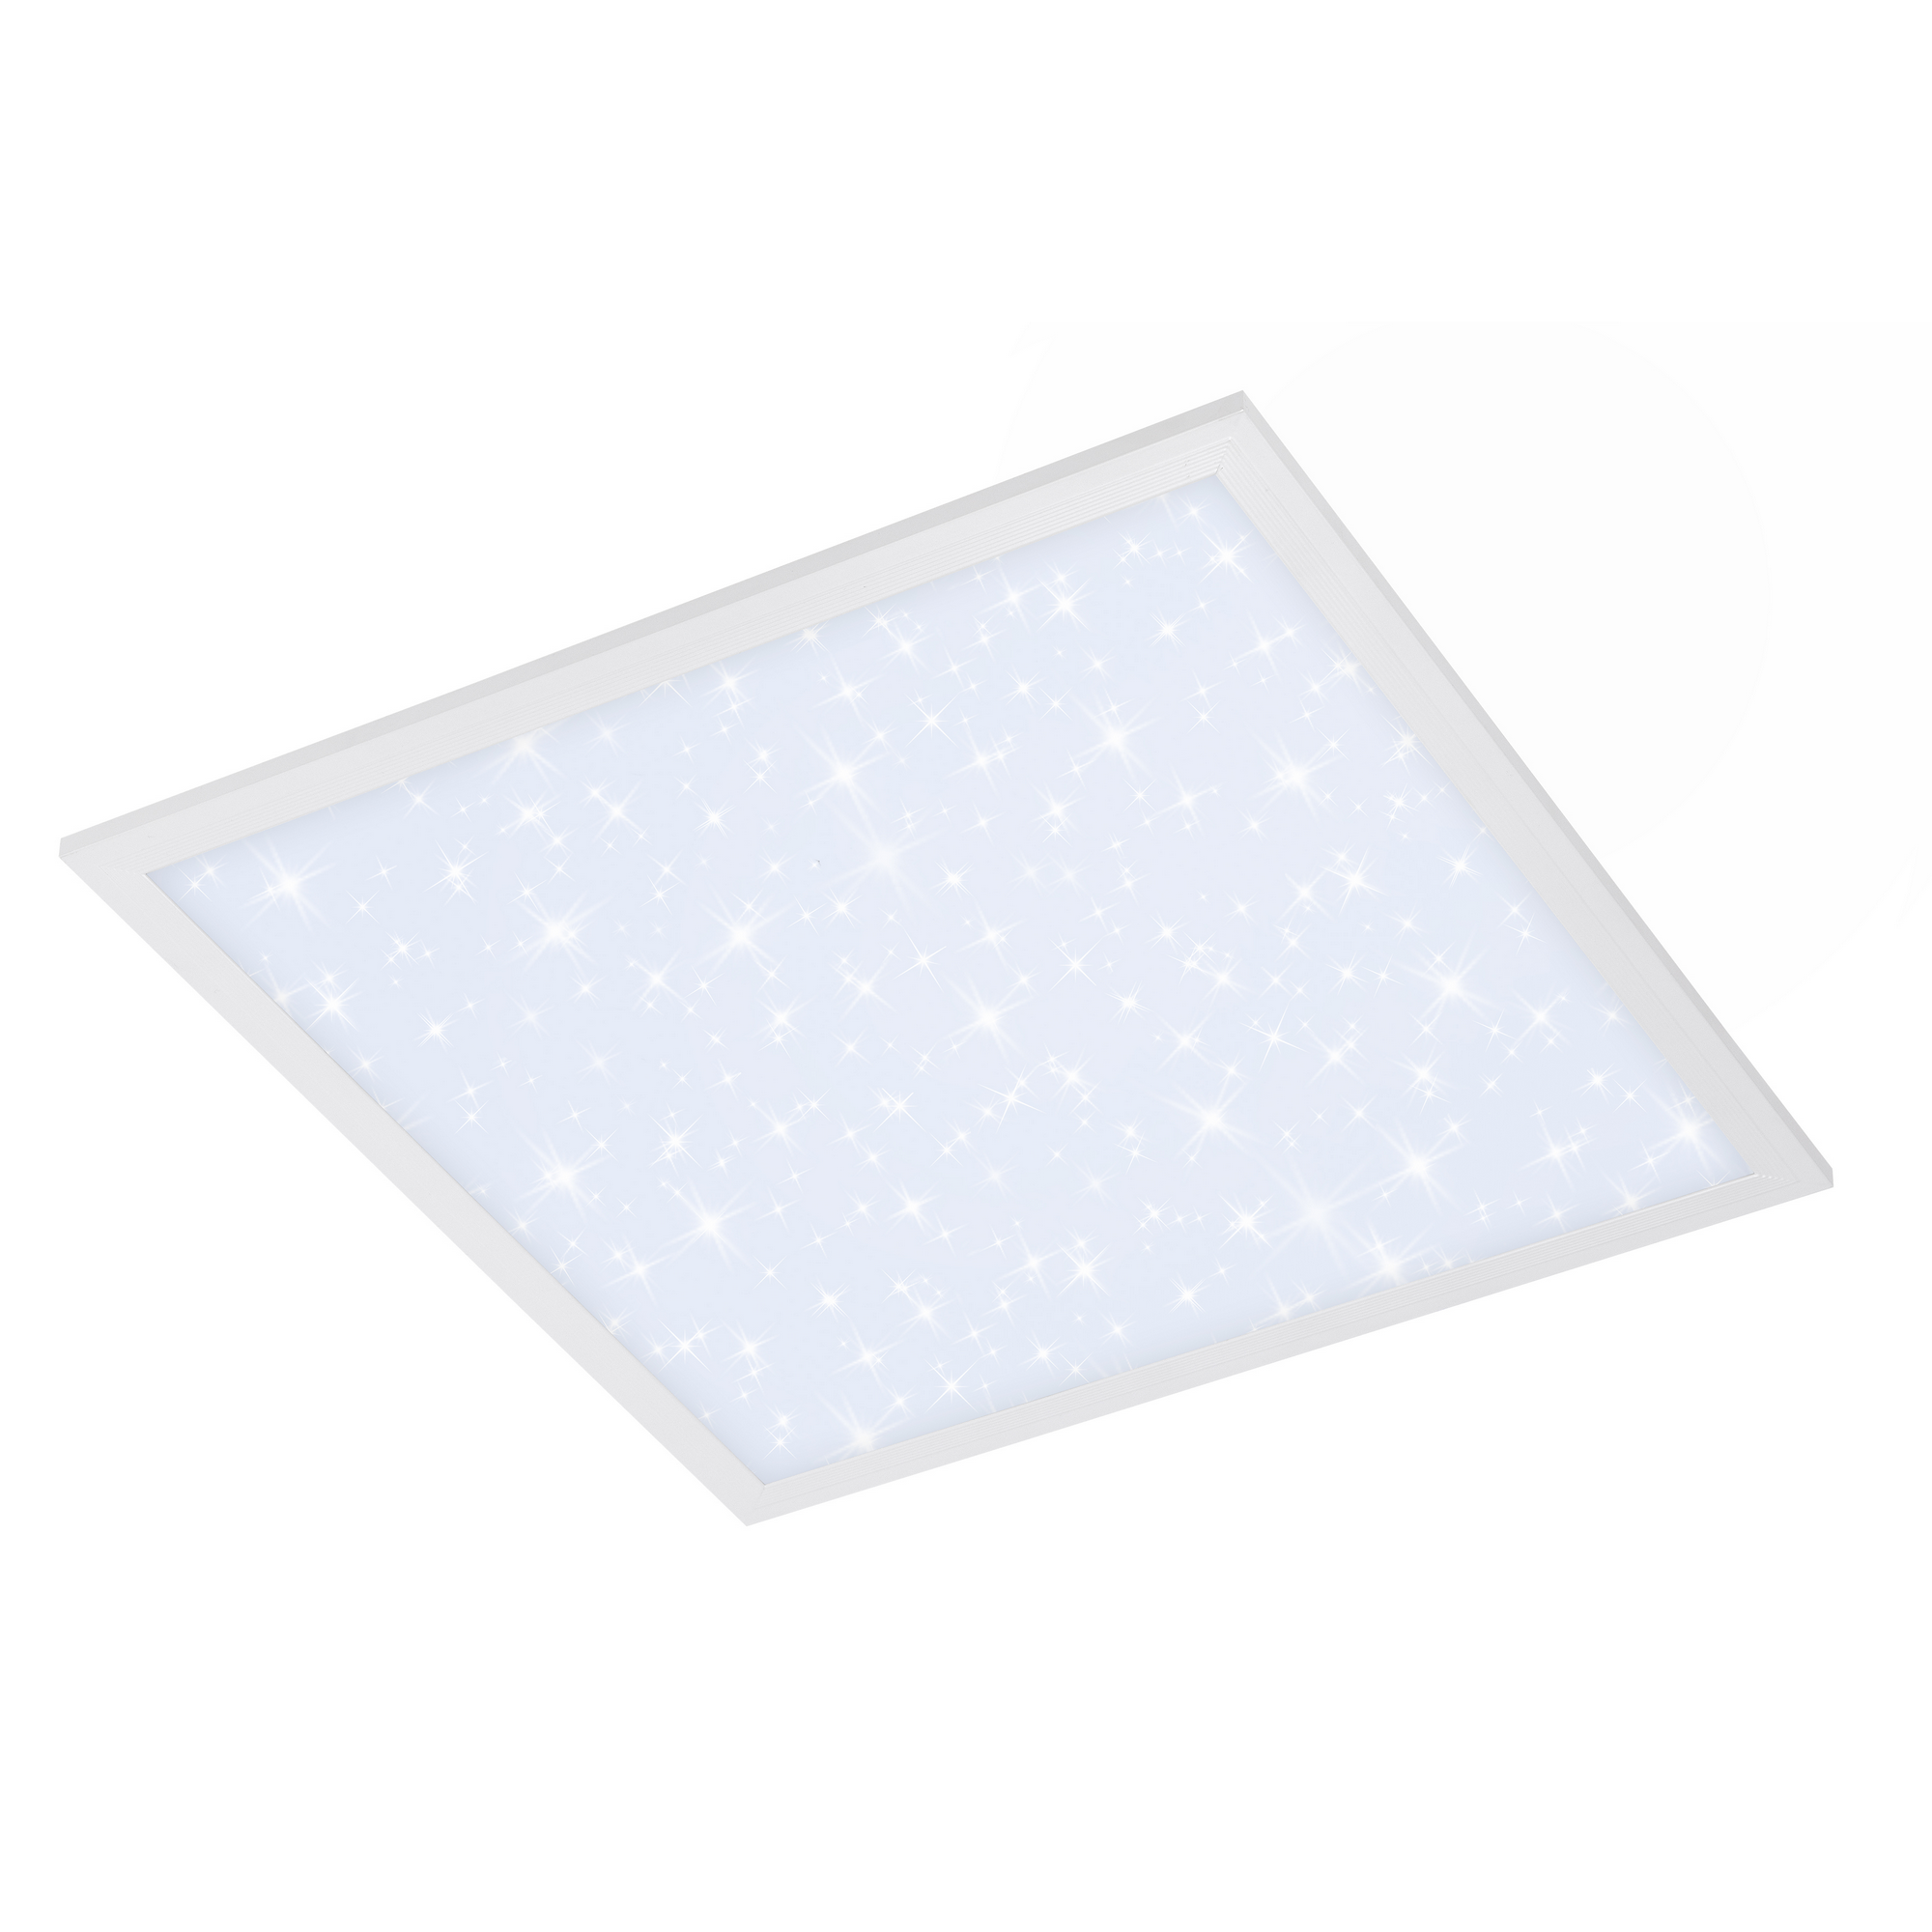 LED-Deckenleuchte 'Pallas' mit Sternendekor, weiß, 2400 lm, 45 x 45 cm + product picture